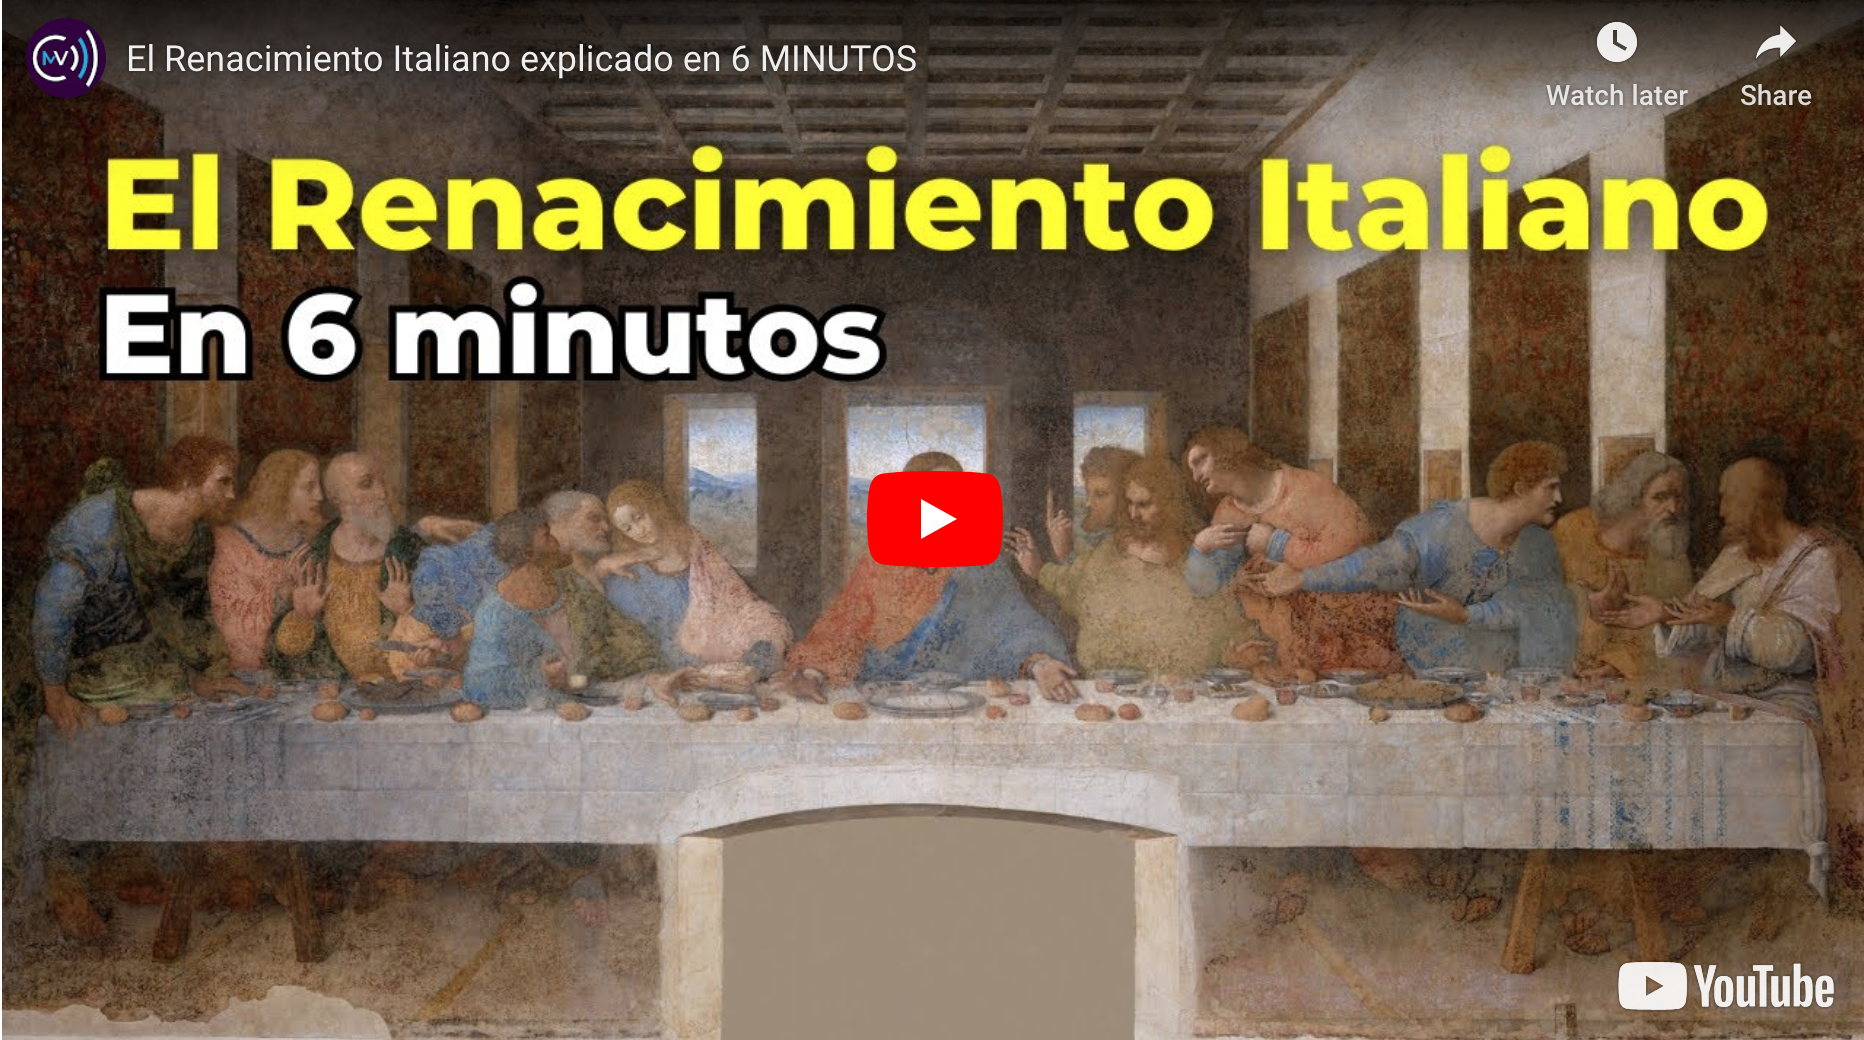 El Renacimiento italiano explicado en 6 minutos con cuestiones insertadas